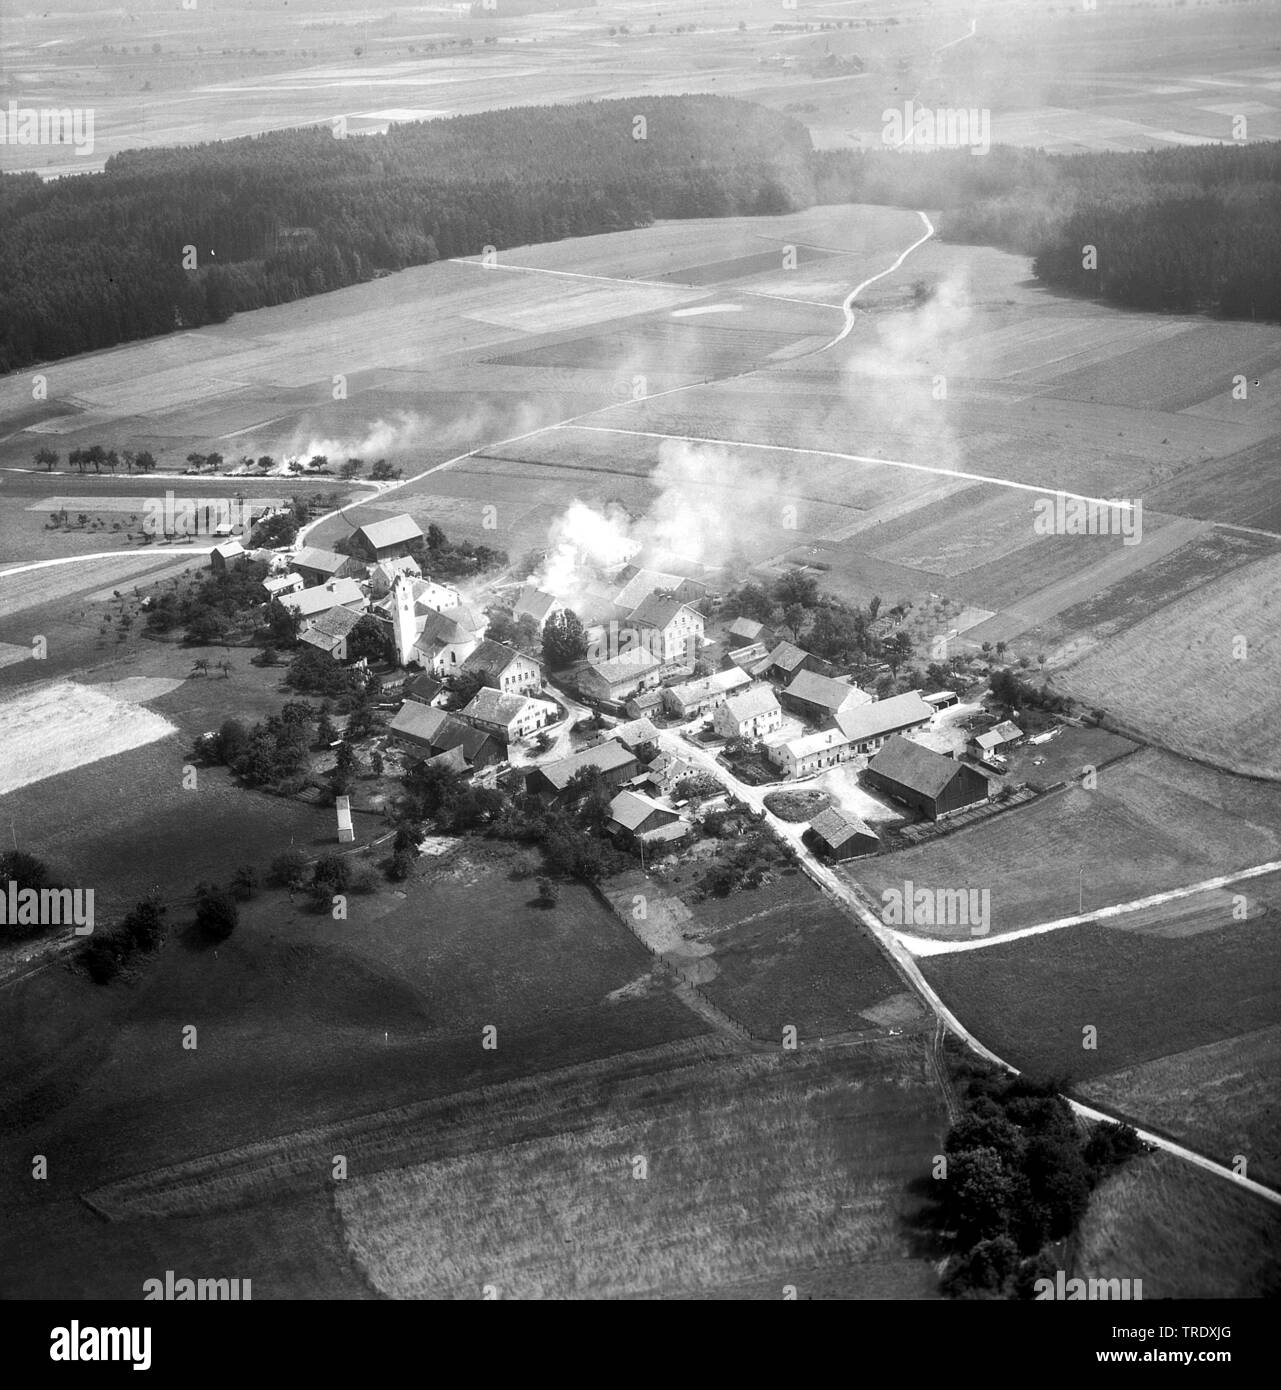 Maison en feu une Kirchbruck à Hürth, photo aérienne de l'année 1960, l'Allemagne, la Bavière Banque D'Images